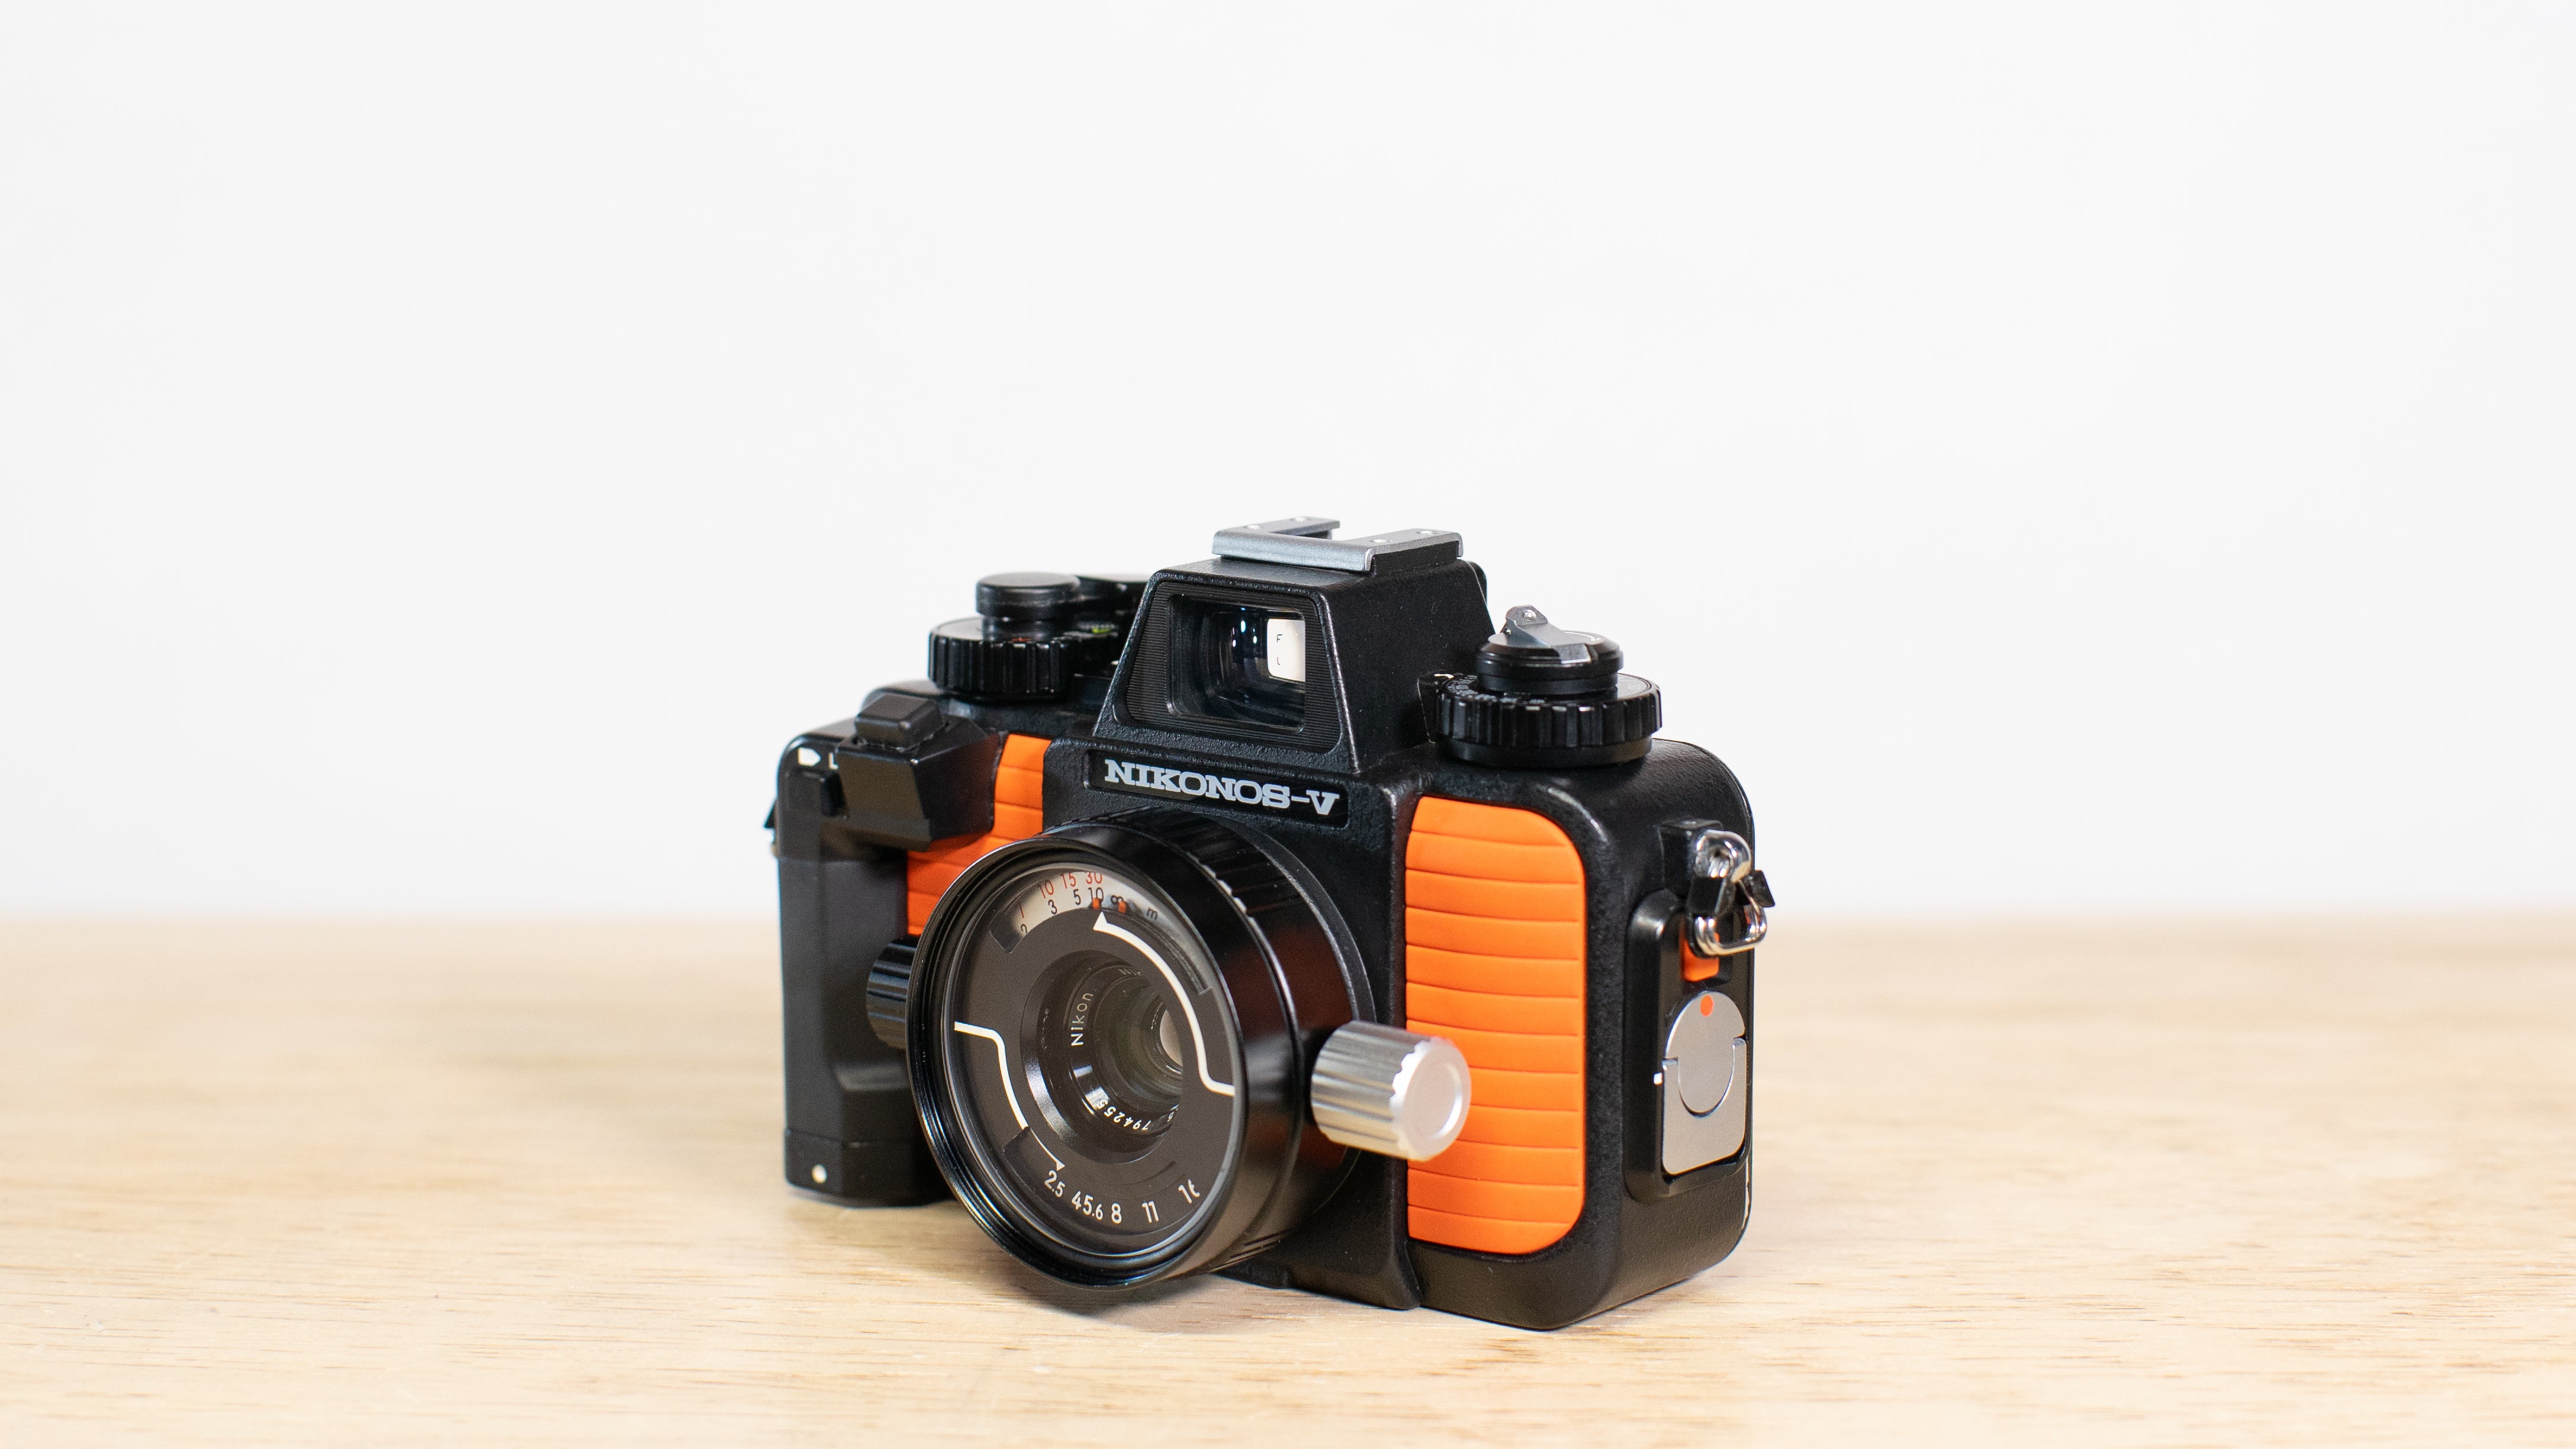 Nikonos V 35mm Film Camera with Nikkor 35mm Lens